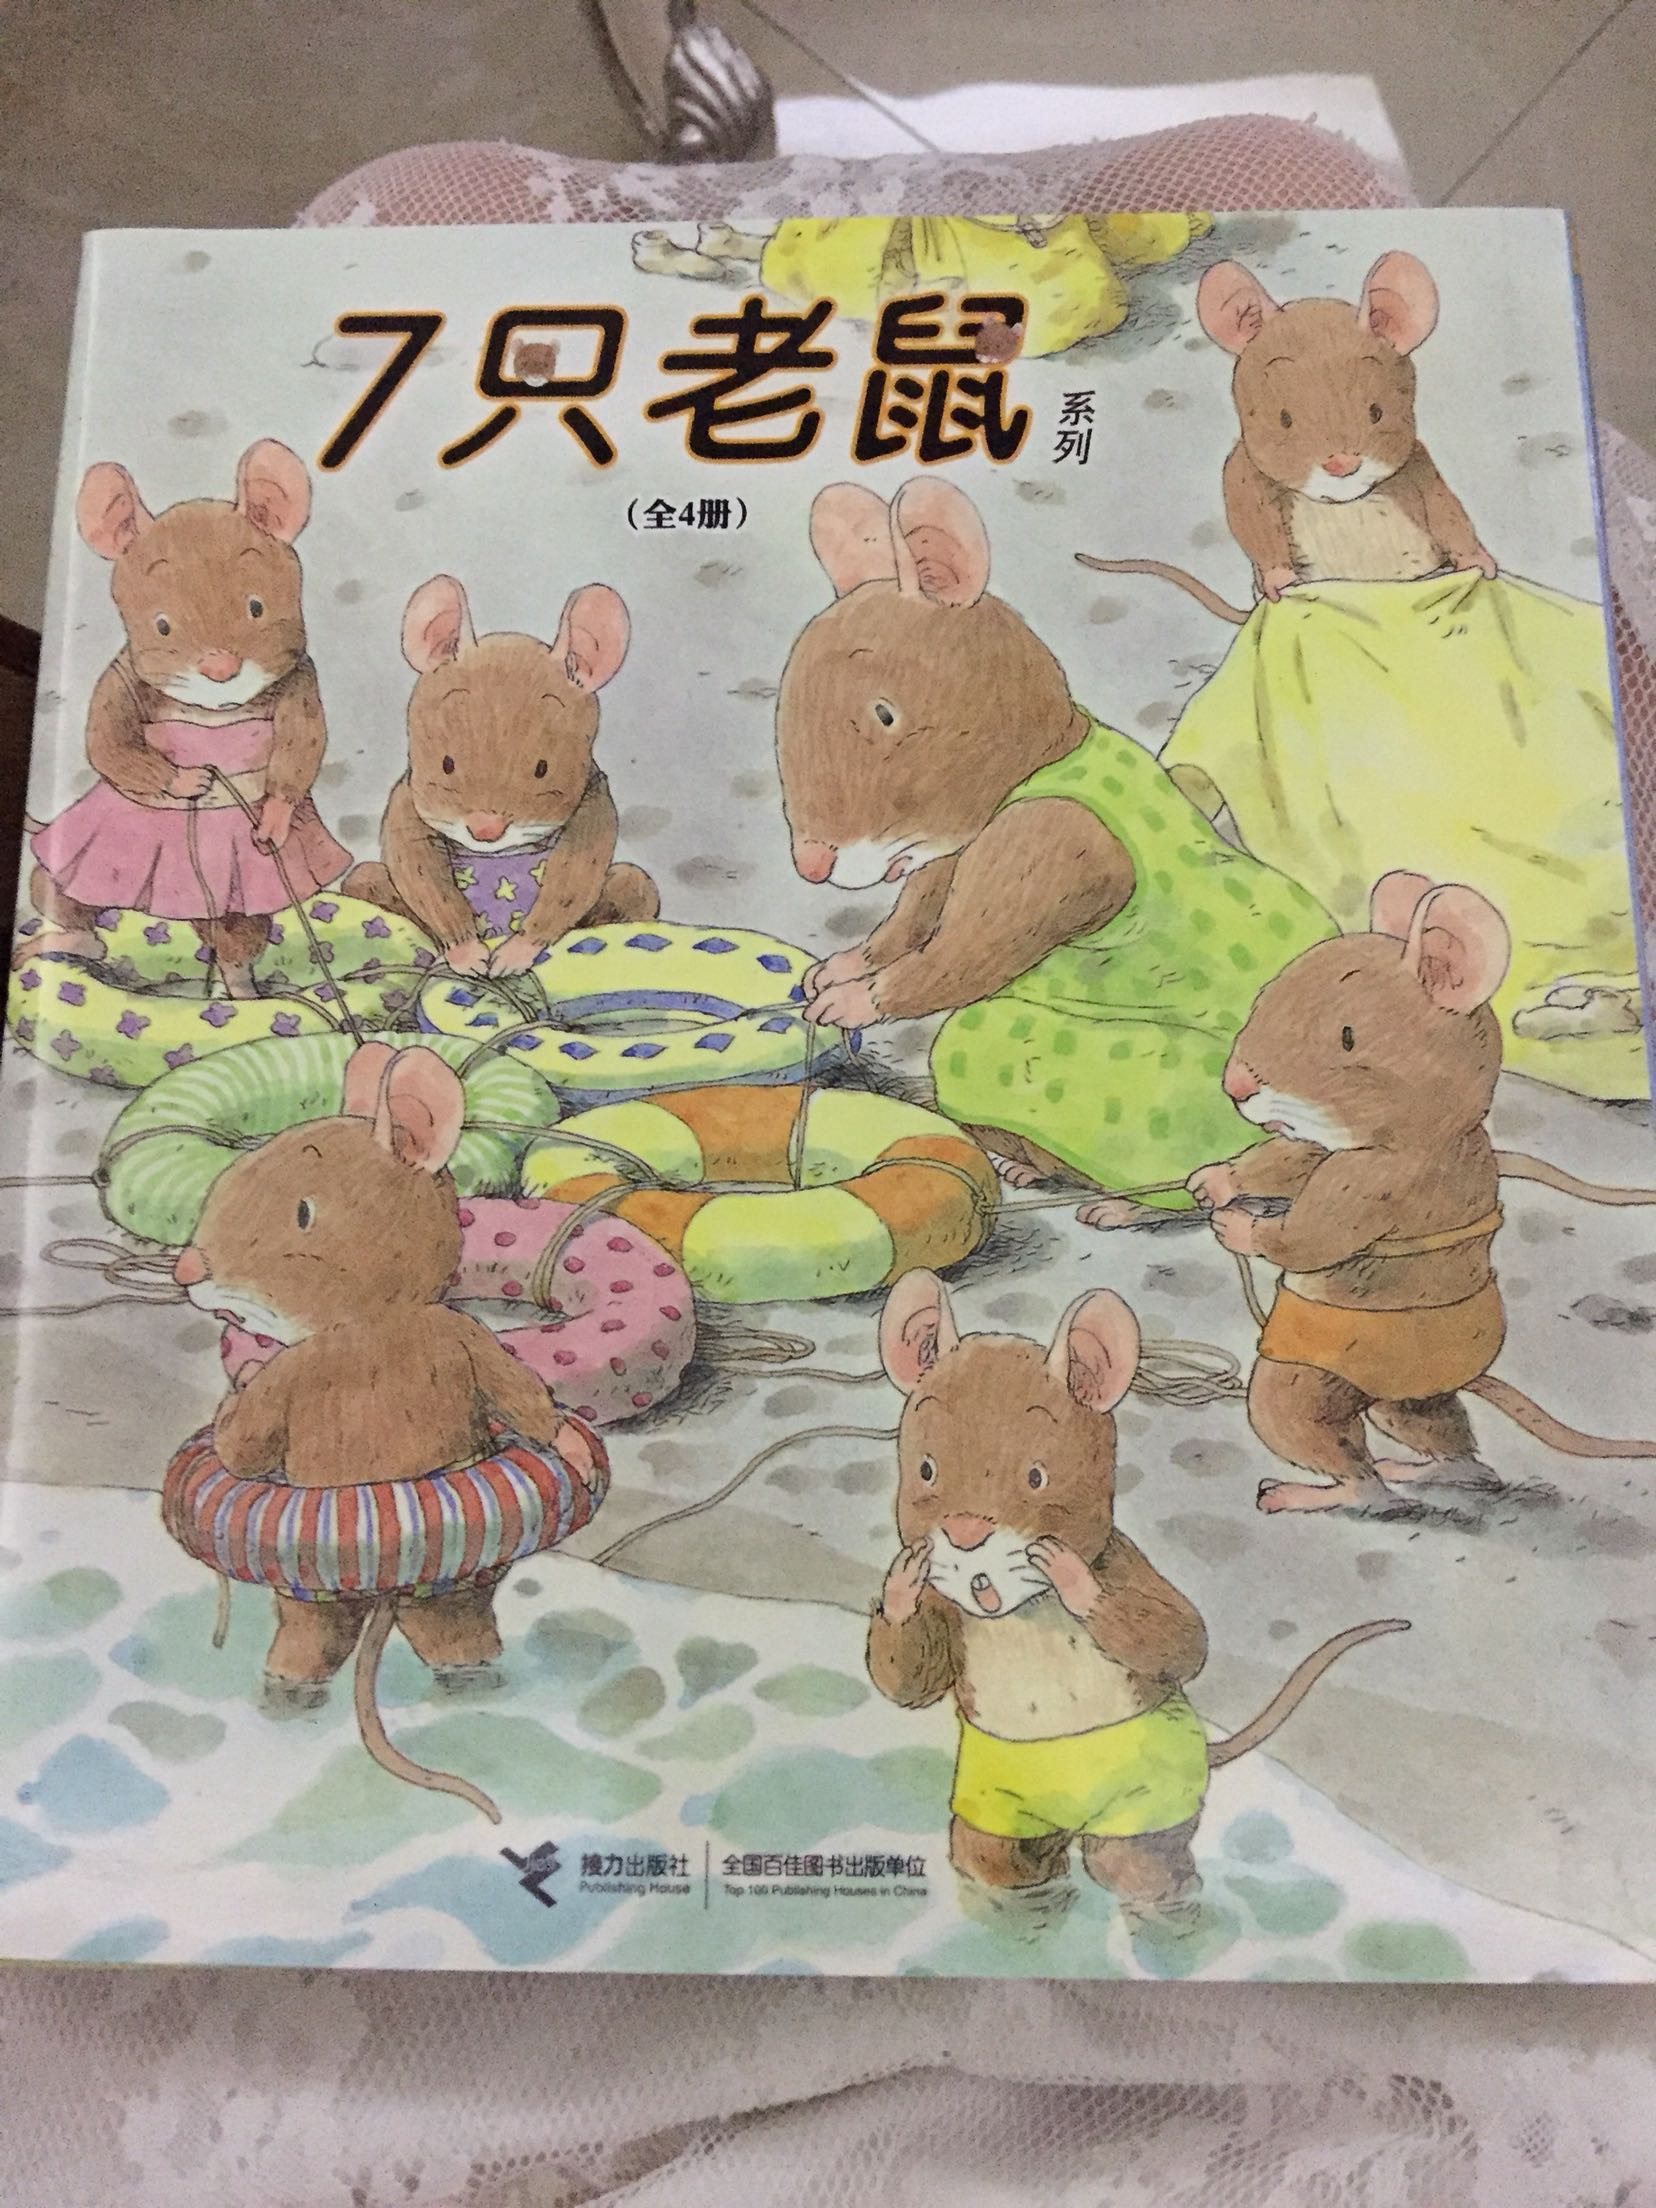 这套书小朋友大爱，非常可爱的七只老鼠，老鼠一家温馨又好玩！插图内容很丰富，小朋友可以从中找出很多乐趣！